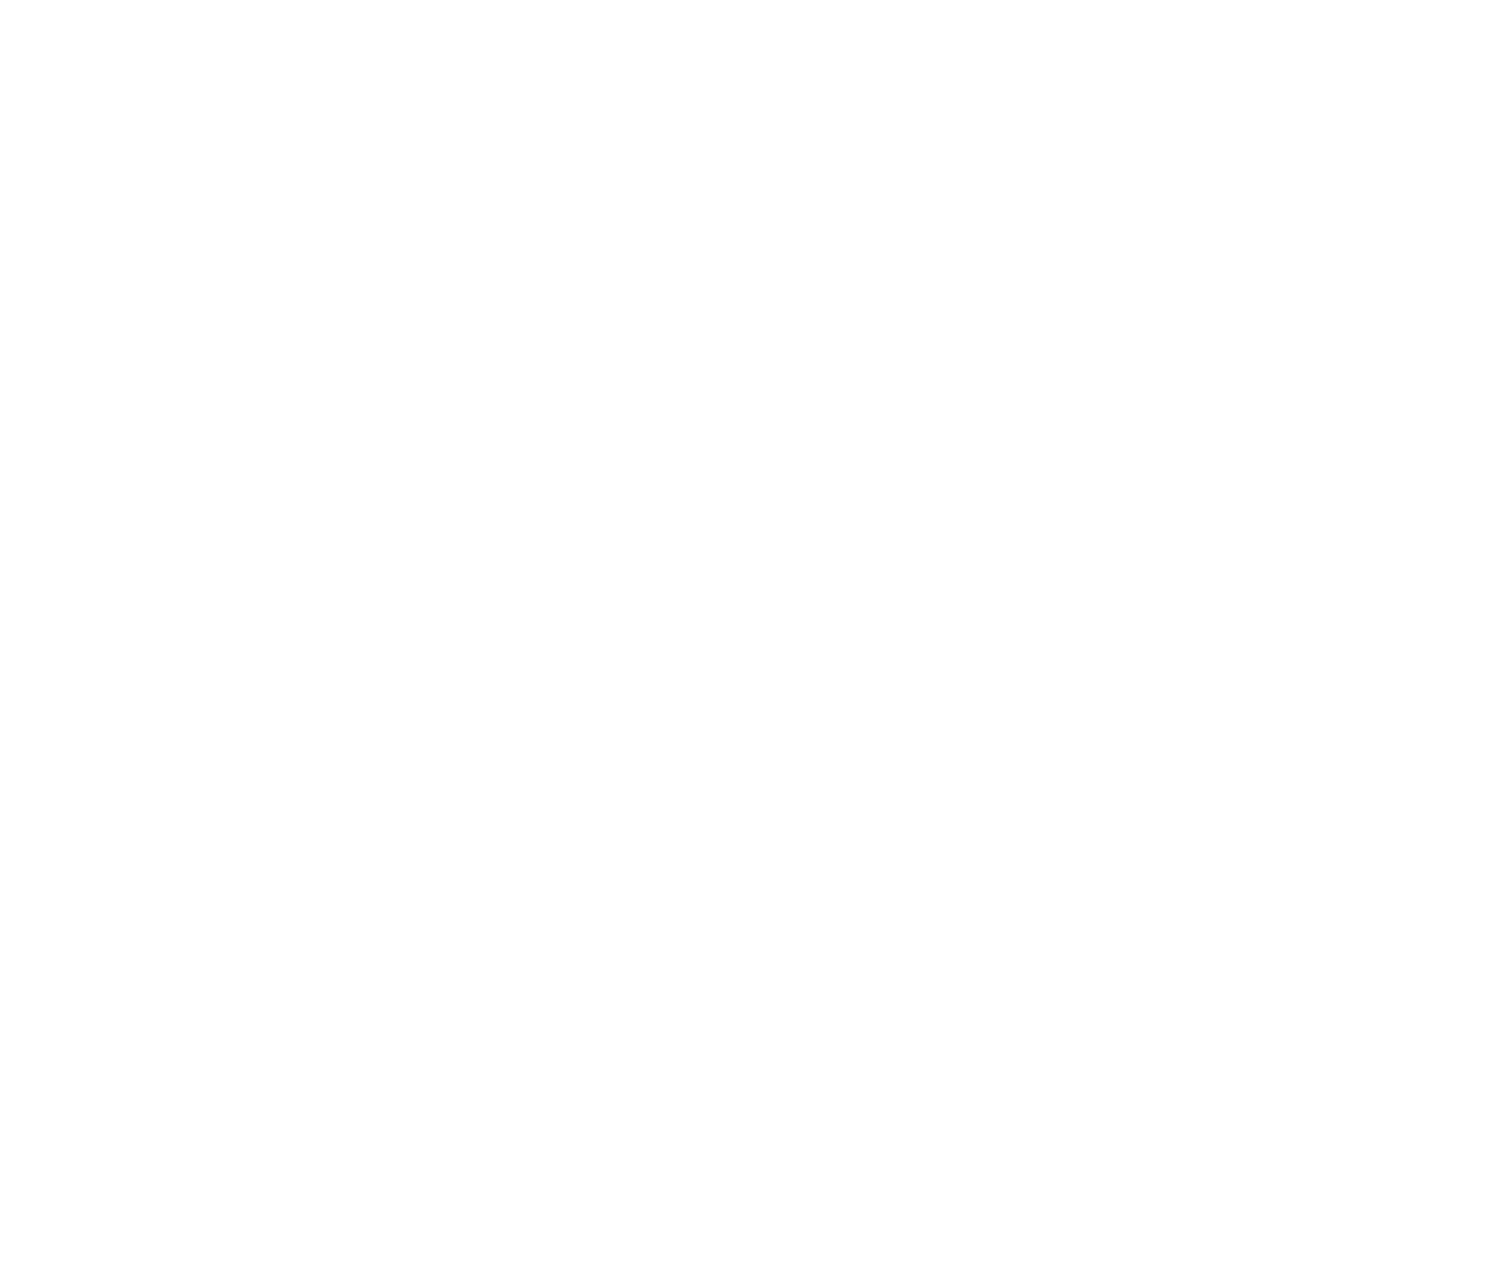 Best Taste